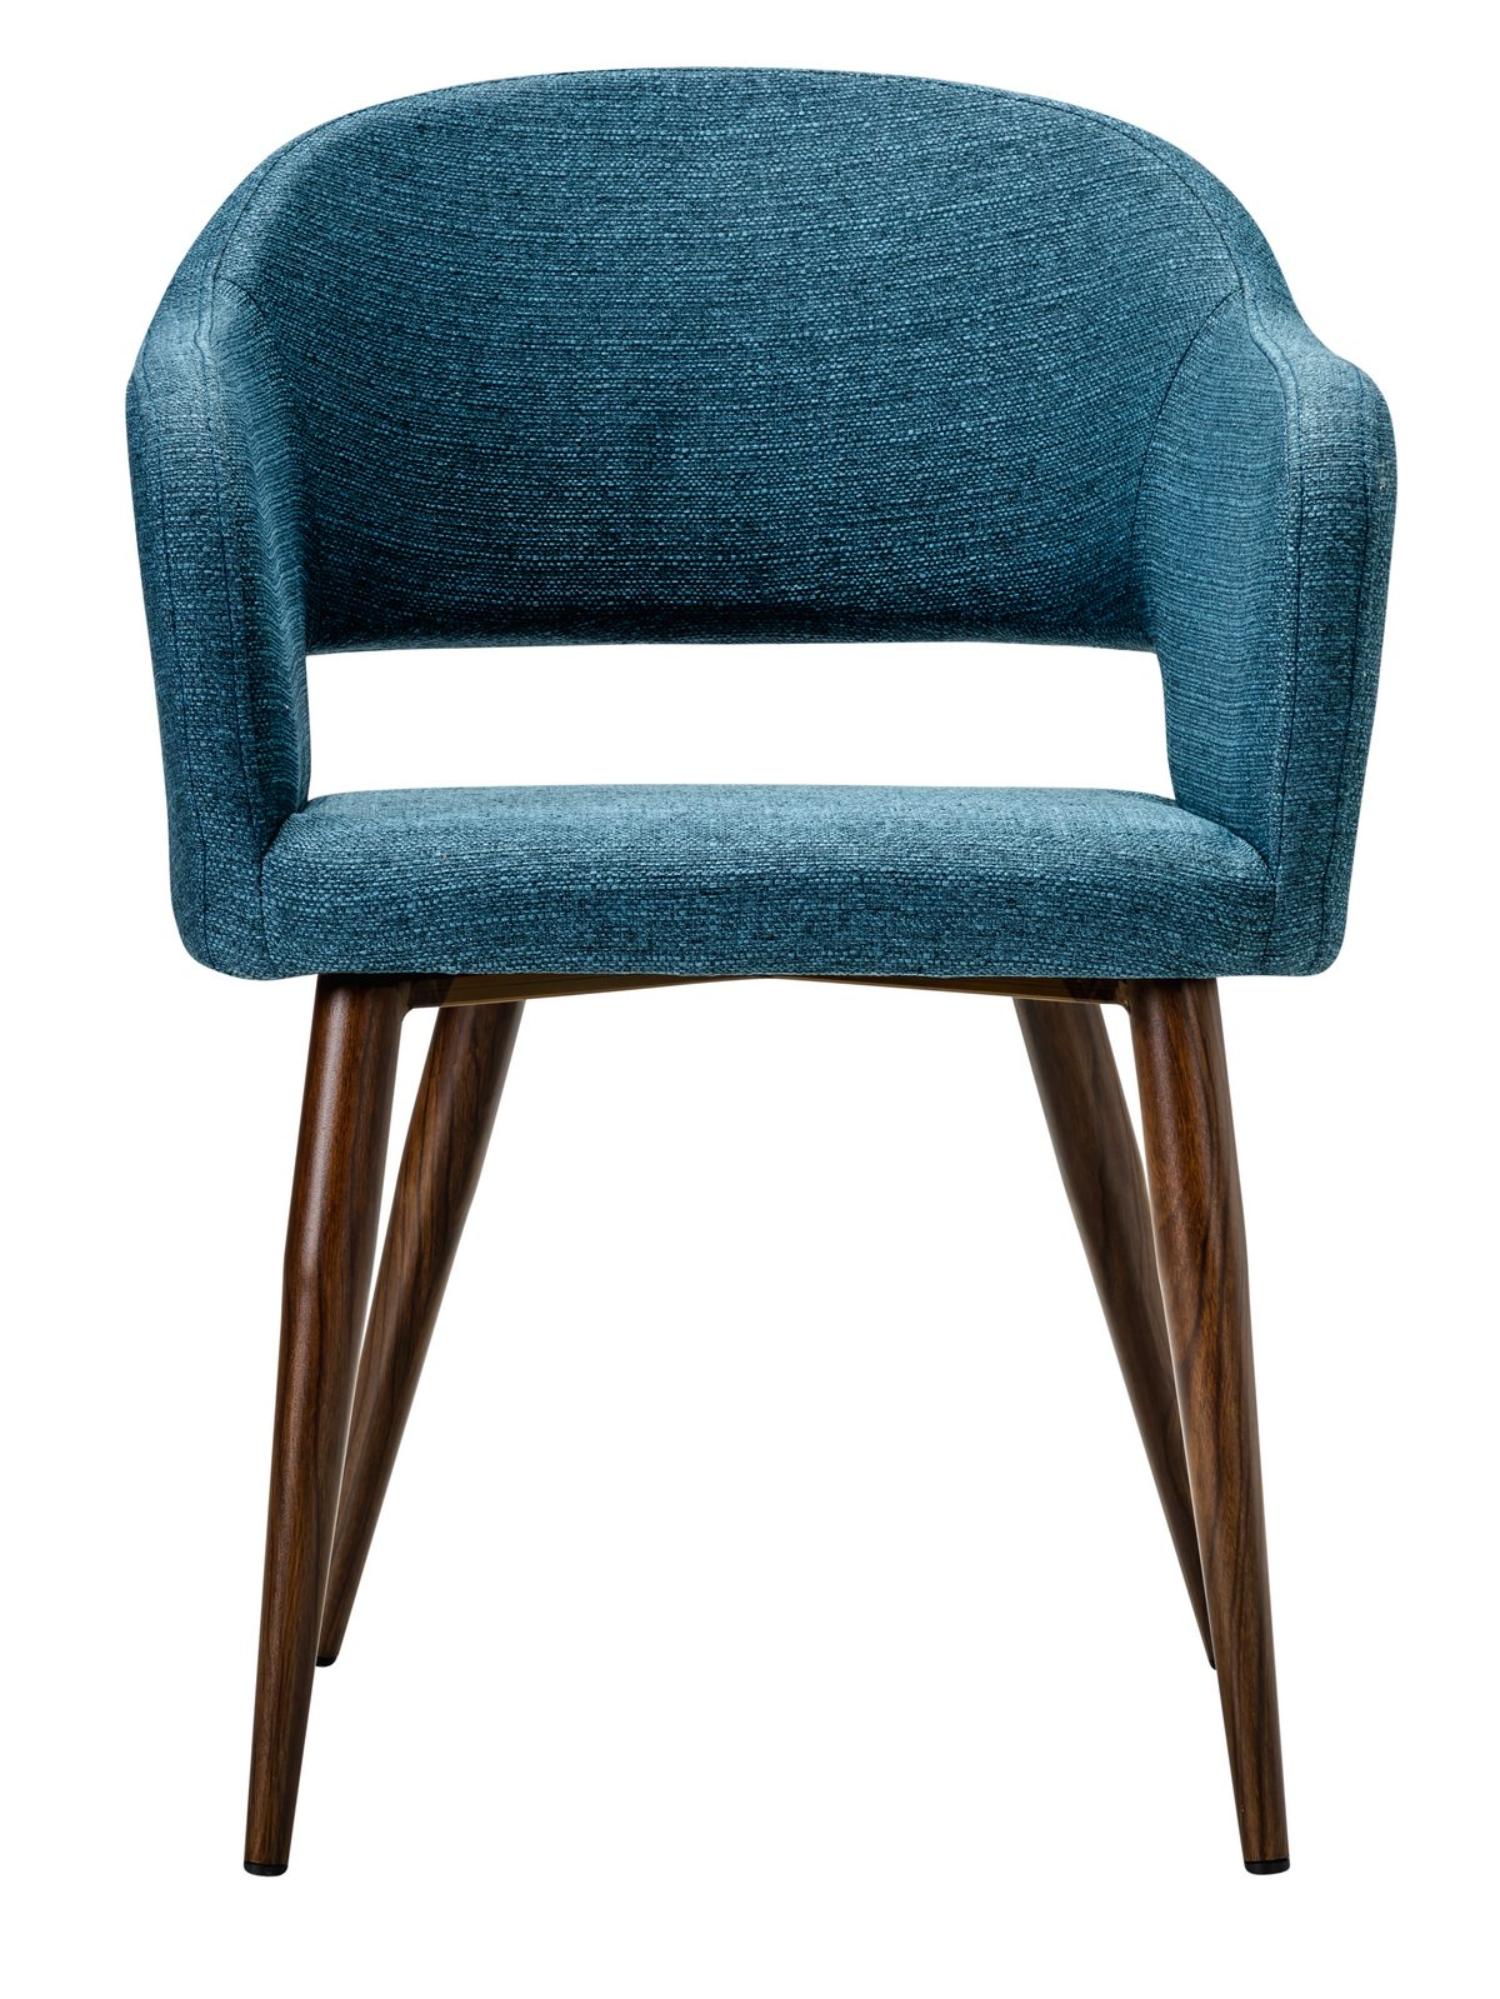 Кресло R-Home Oscar, Сканди, размер 60x59x77.5 см, цвет: Блю Арт Темный Орех(41011851_БлюАртТОрех)41011851_БлюАртТОрех